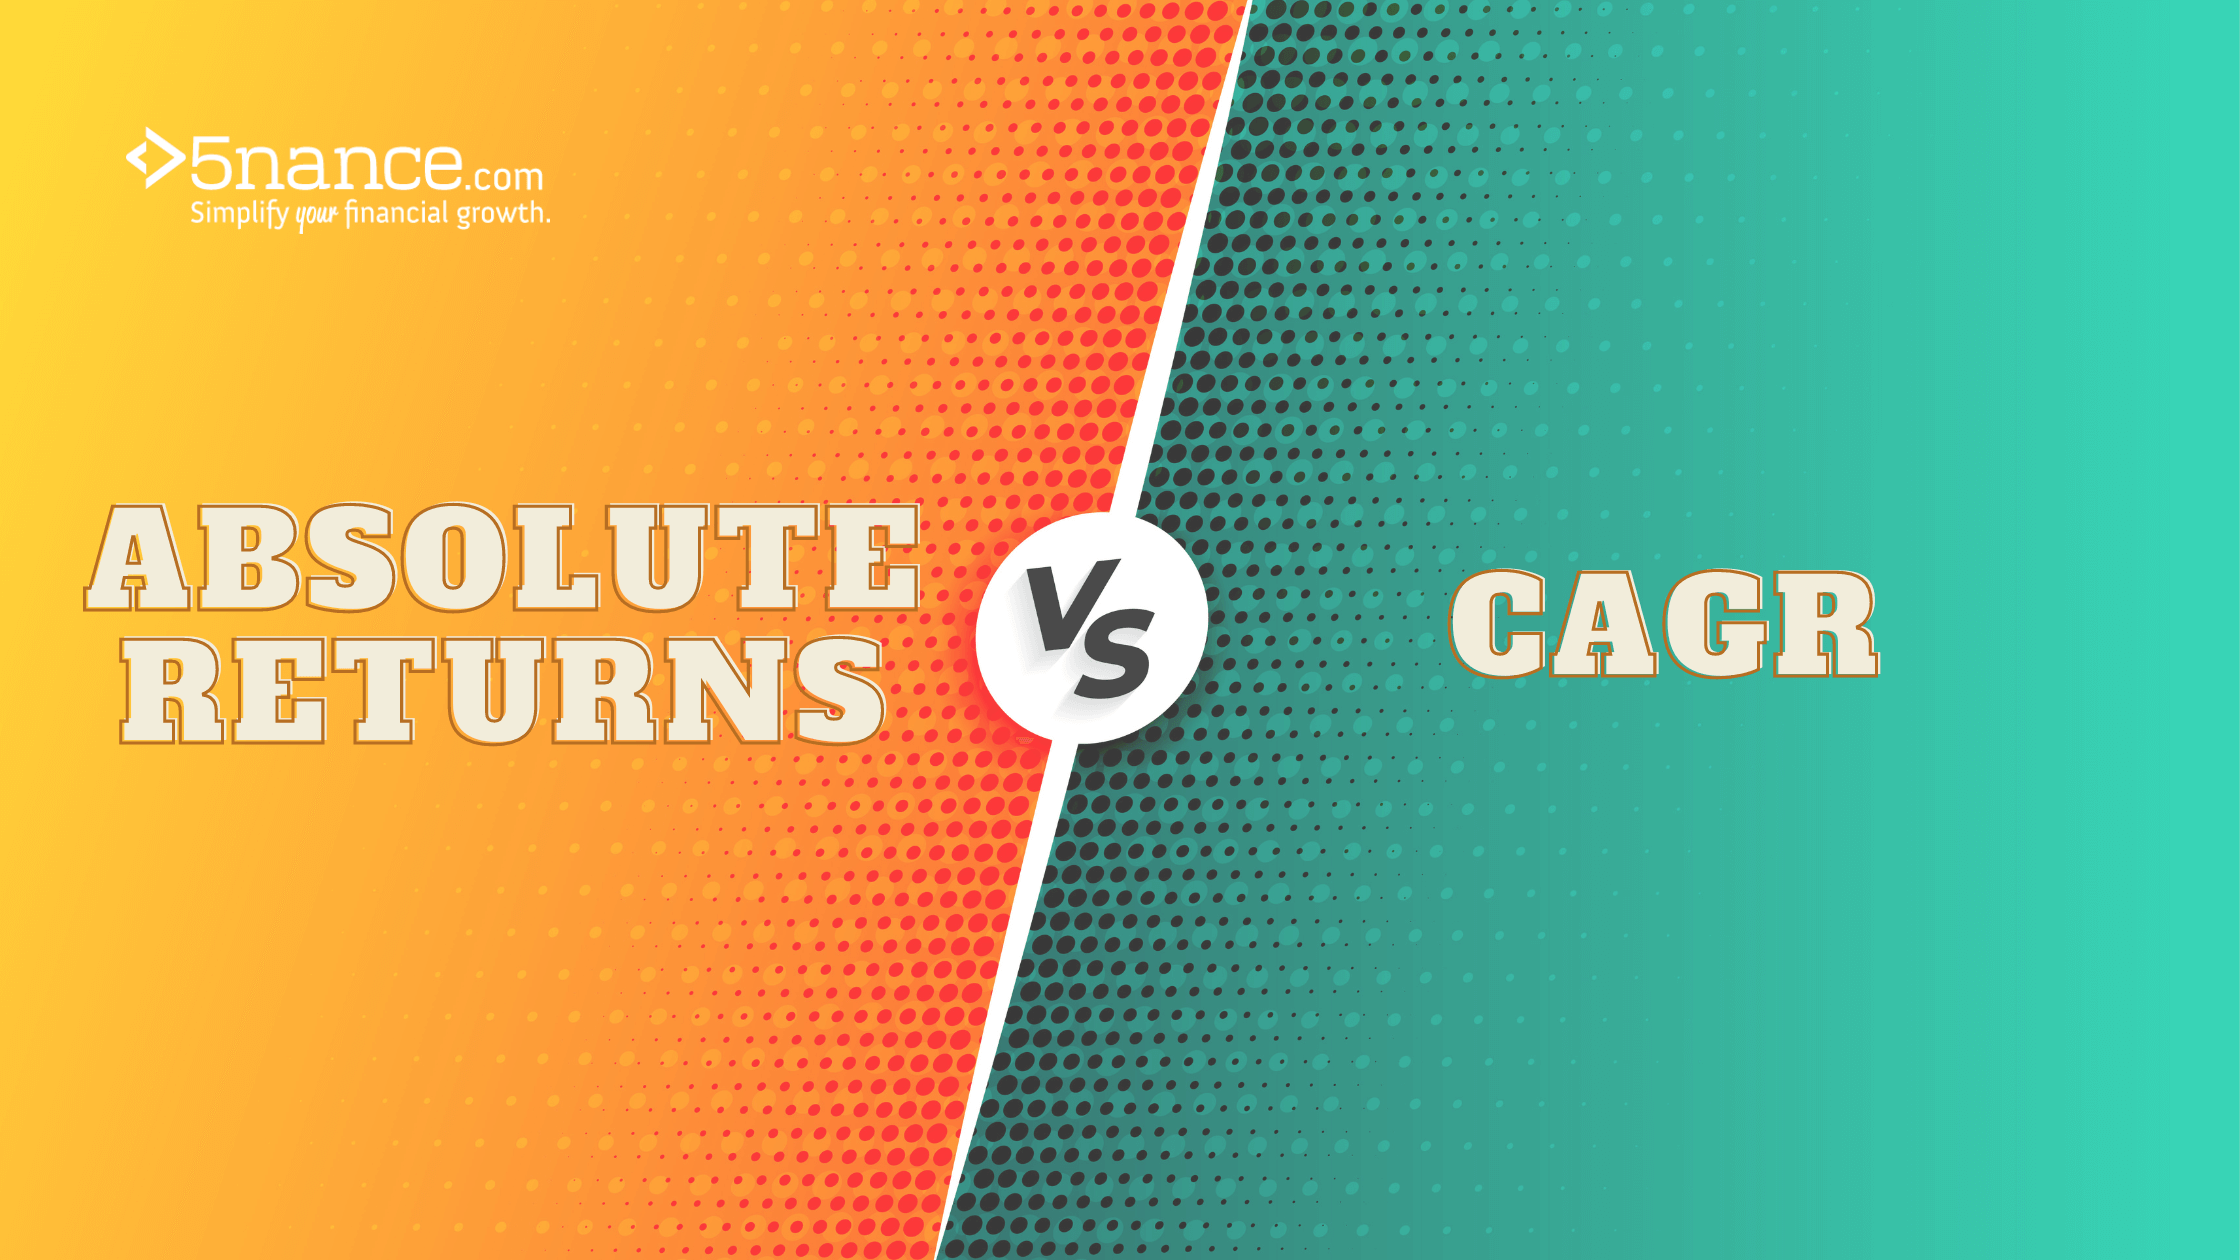 CAGR vs absolute returns